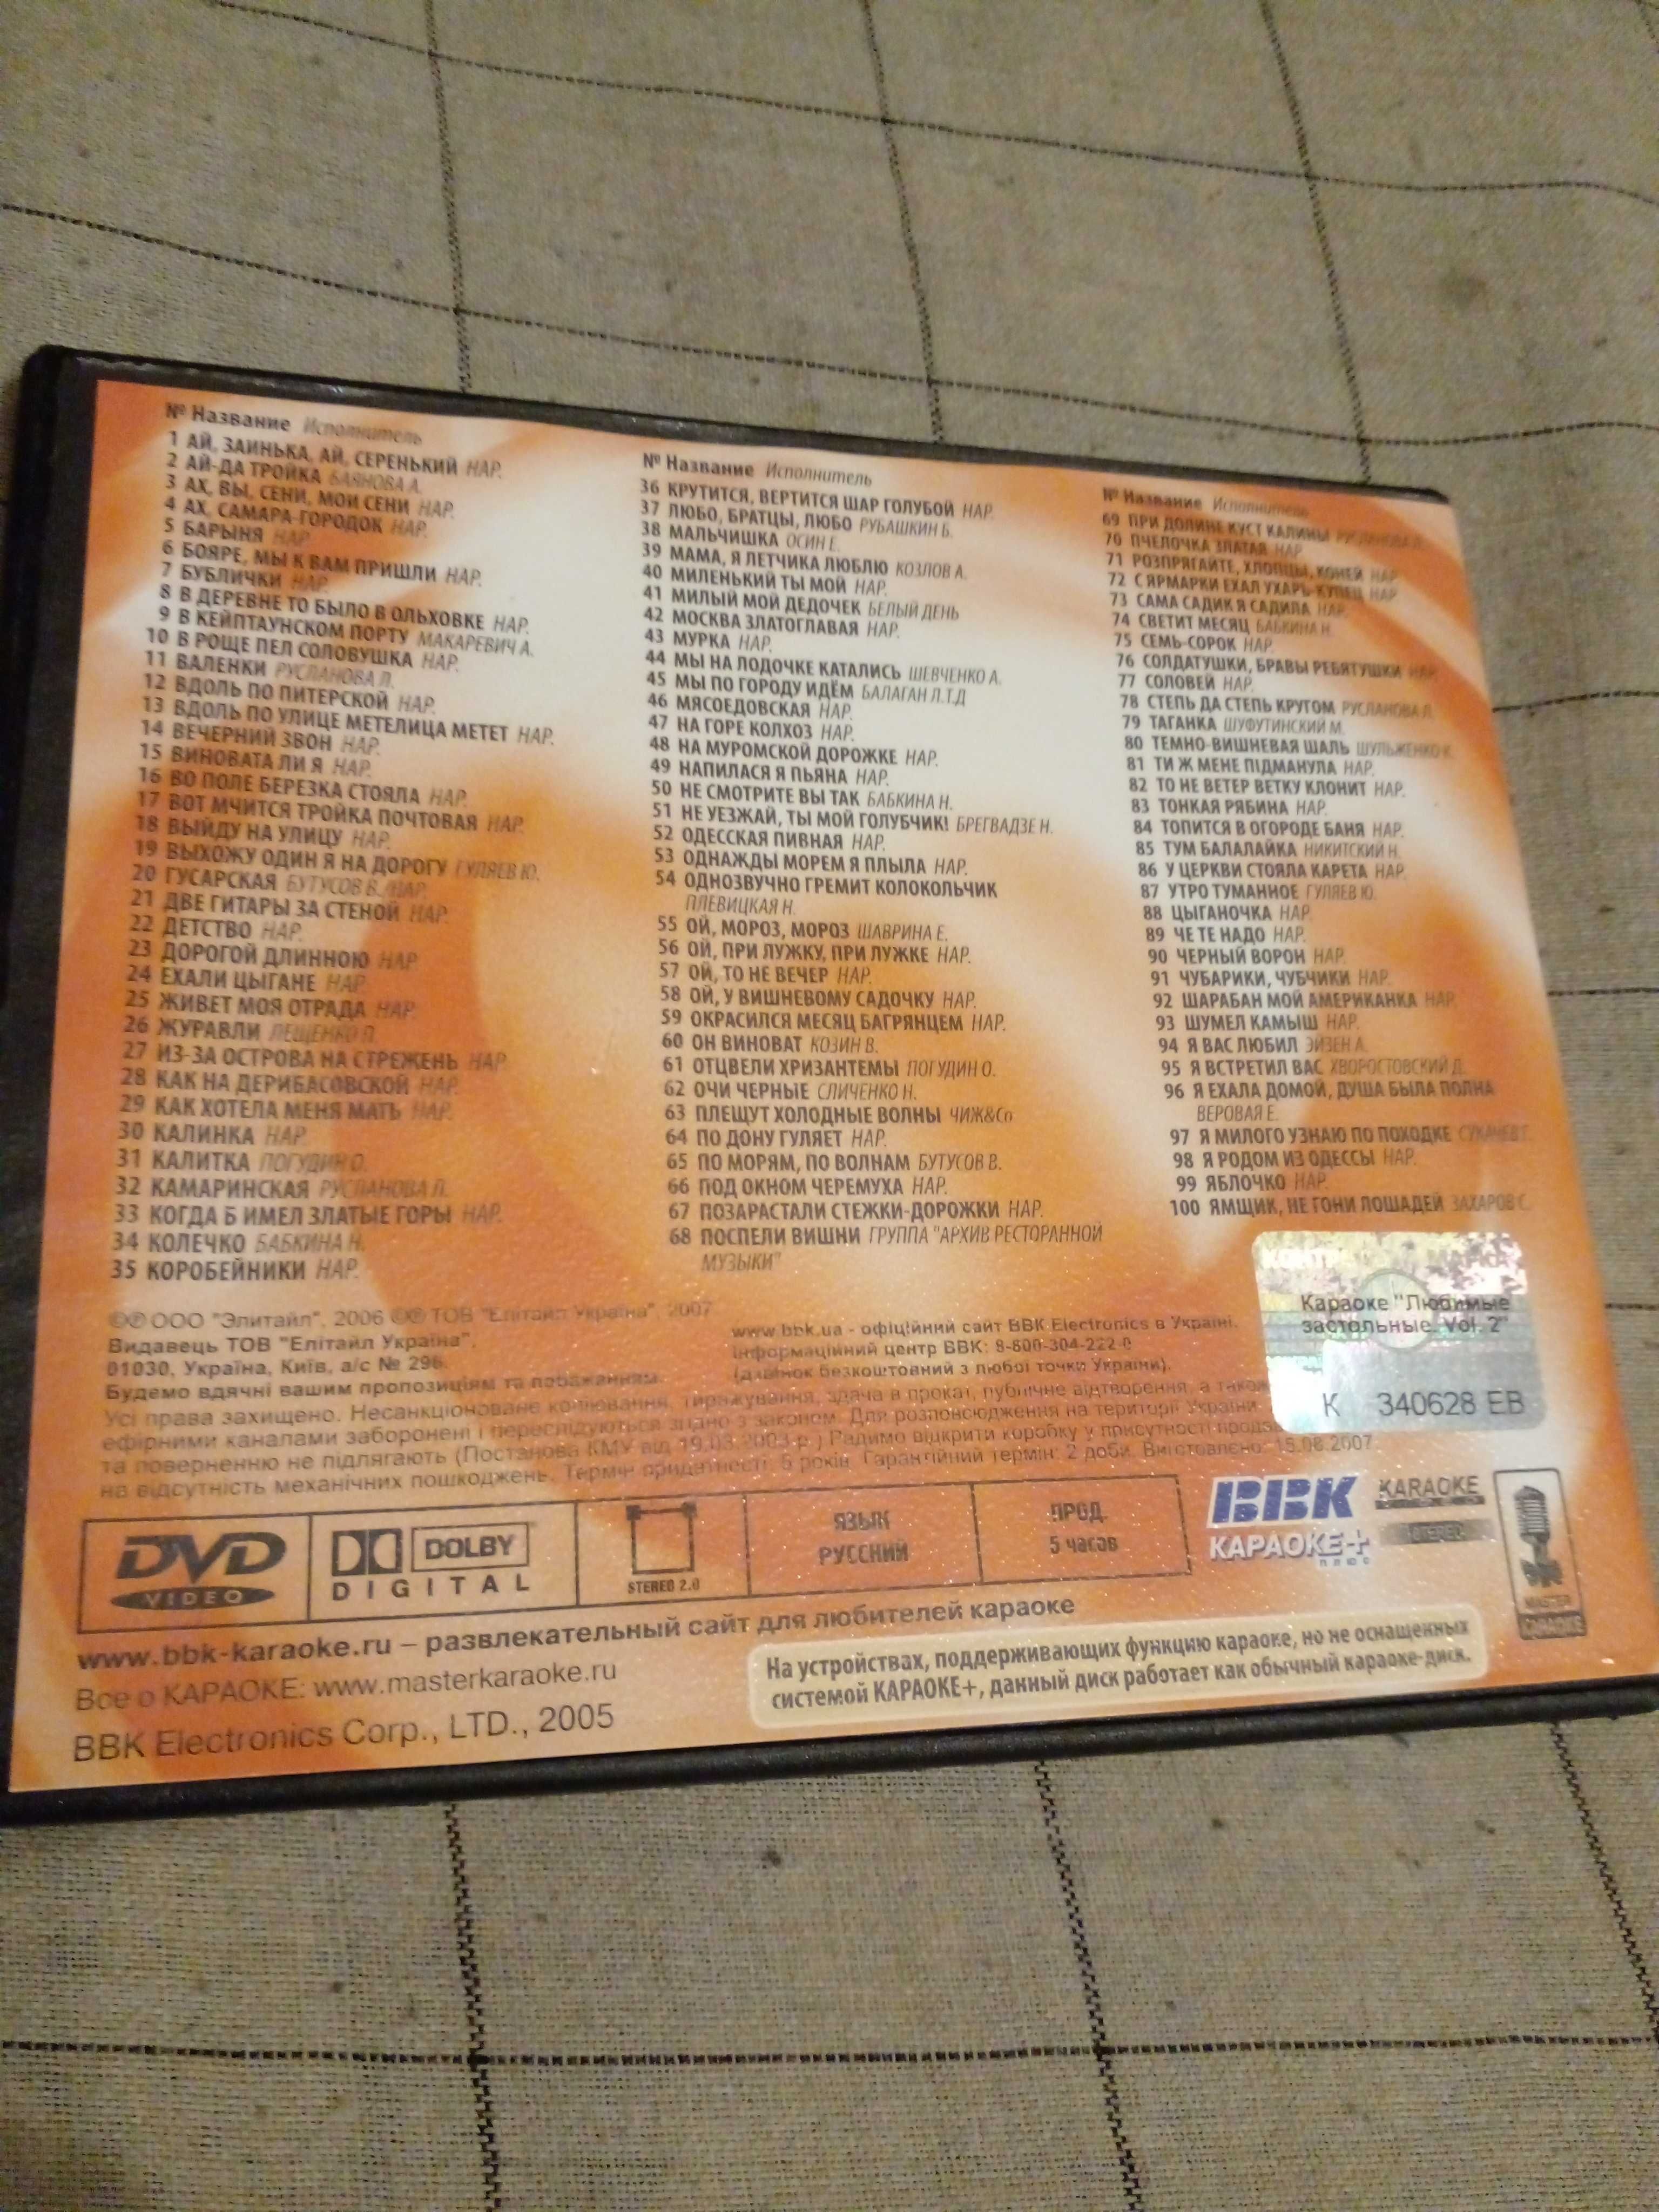 DVD диск (караоке) "Застольные песни"